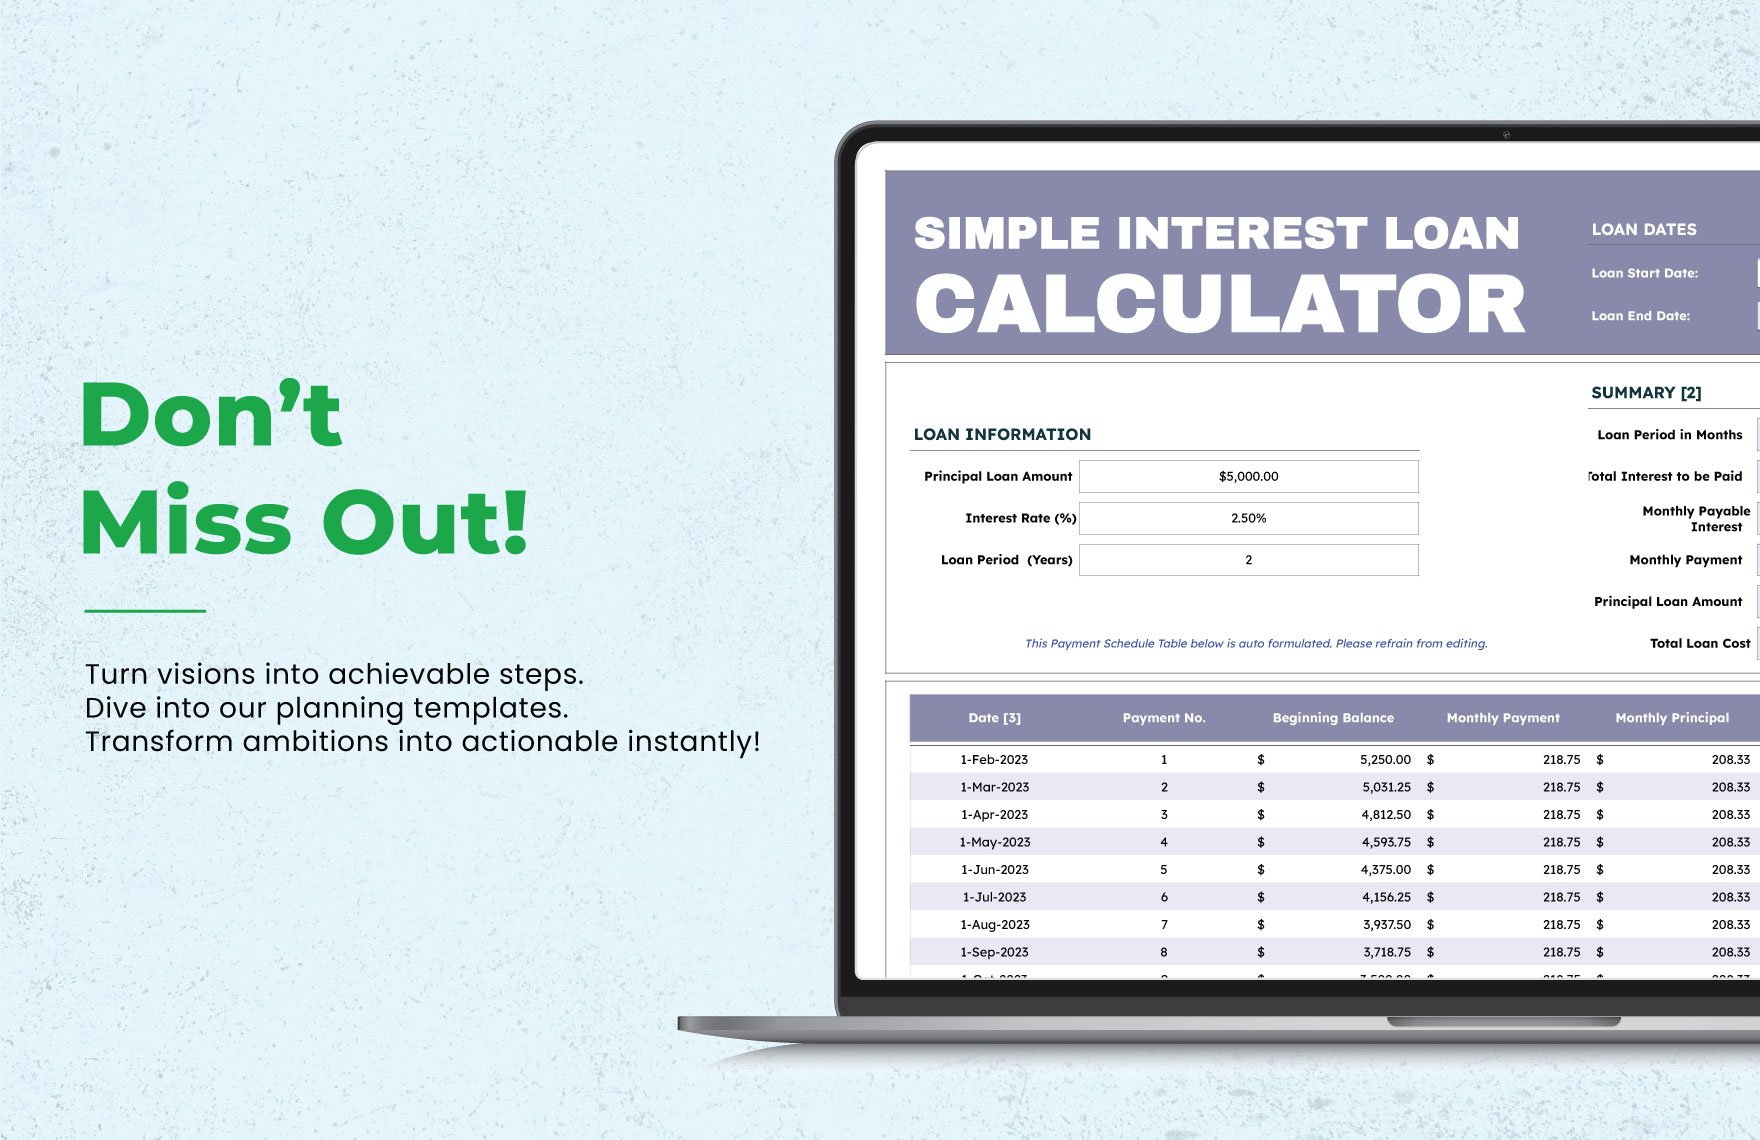 Simple Interest Loan Calculator Template